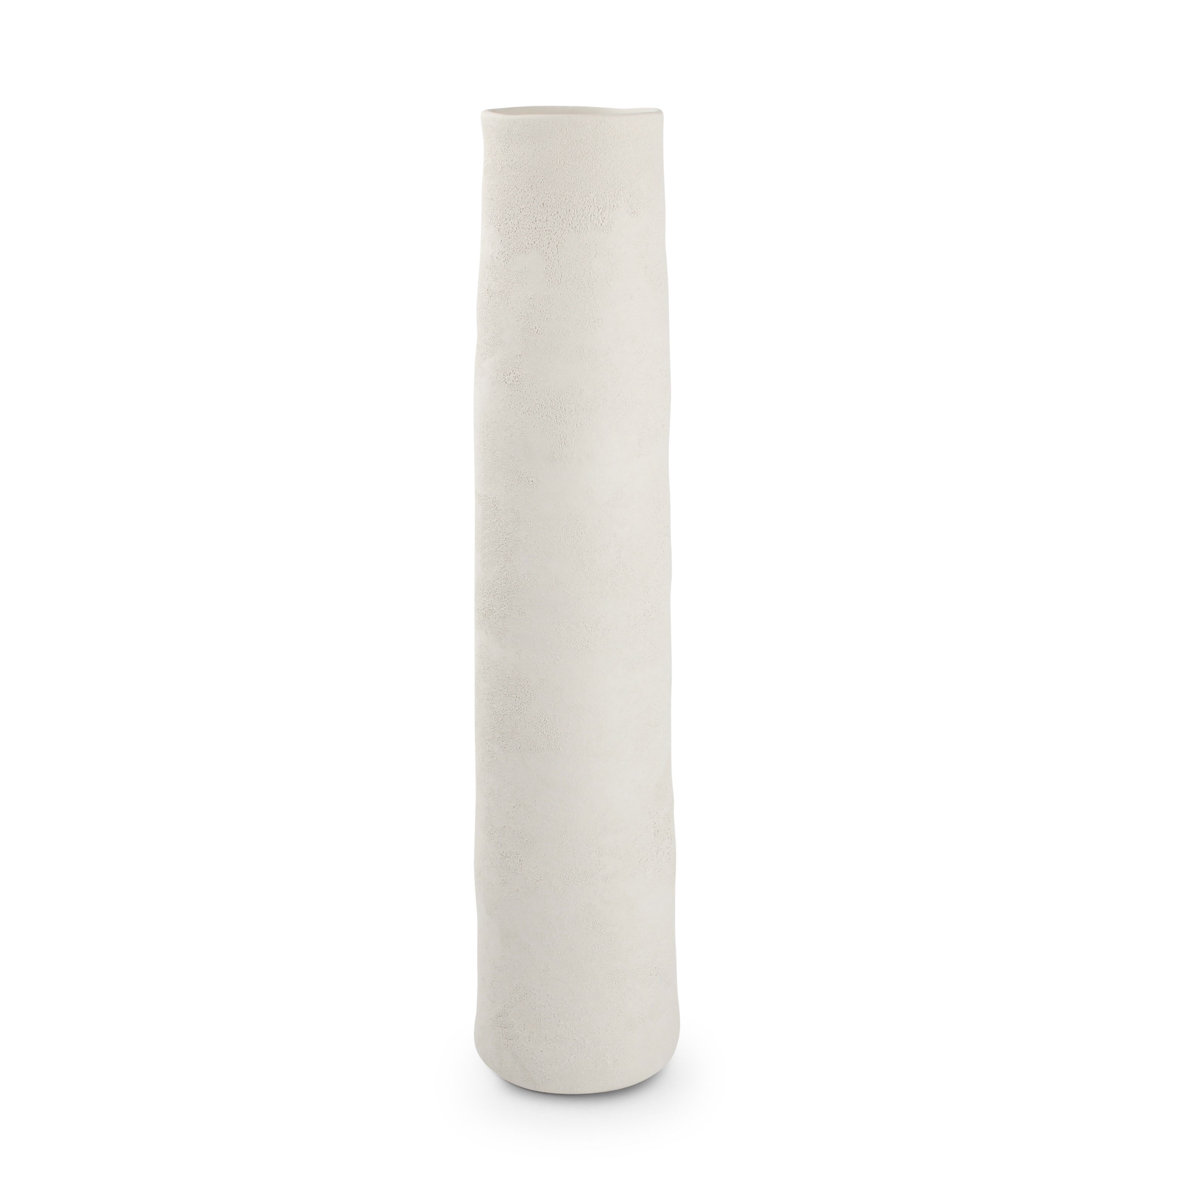 Zdjęcia - Wazon Salt & Pepper  CONE biały stożek wysoki 11,5x50 cm 